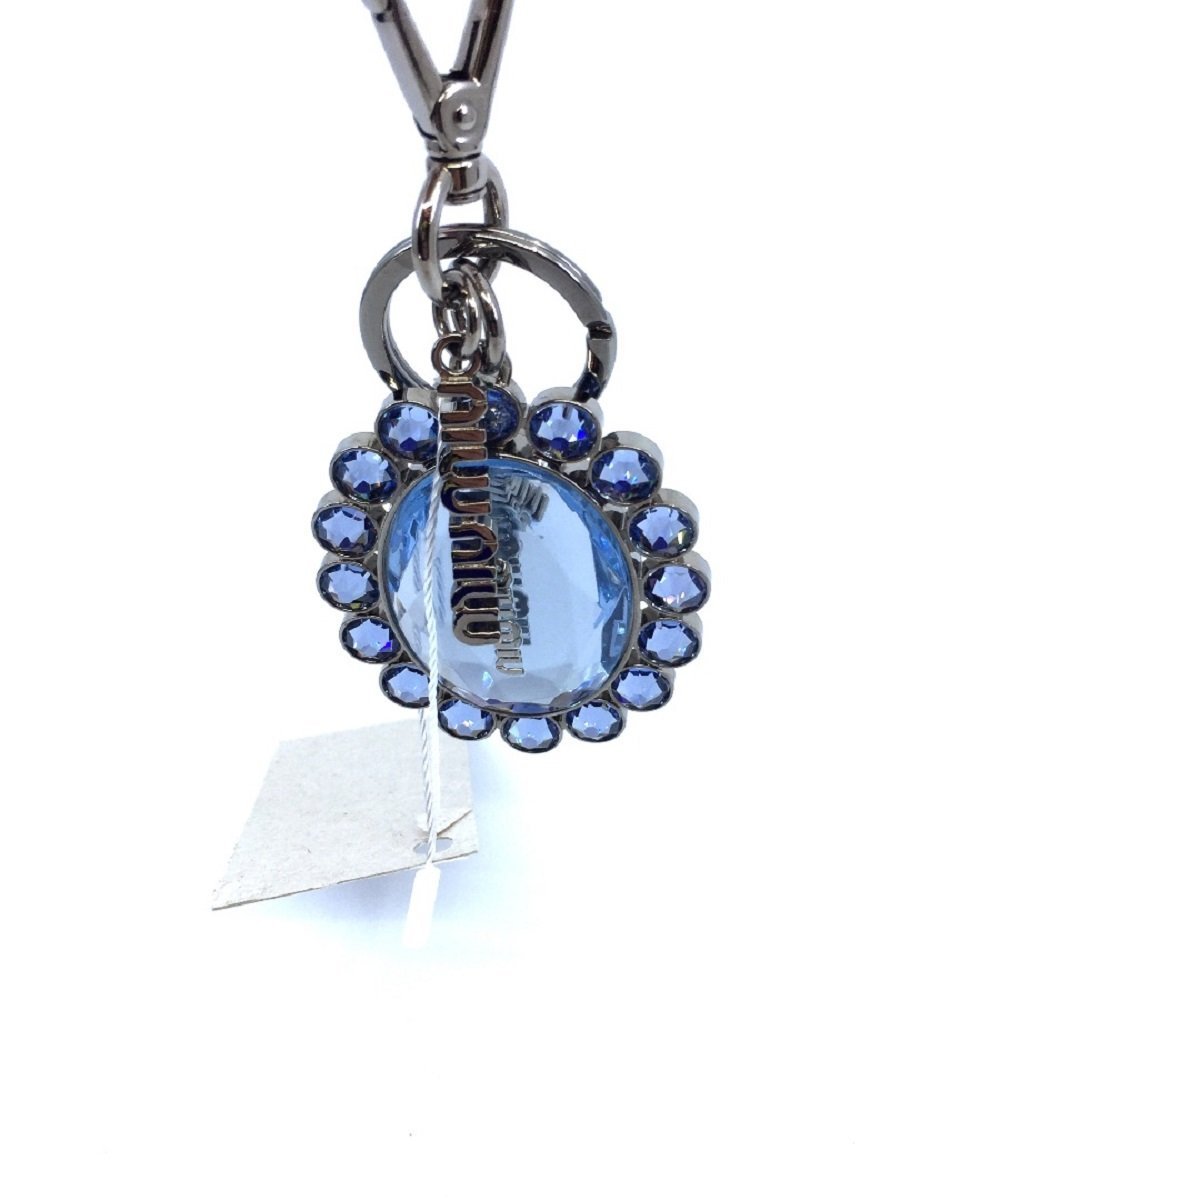 Miu Miu Trick Metallo Oval Crystal Blue Plex Charm Key Chain Key Ring - LUXURYMRKT